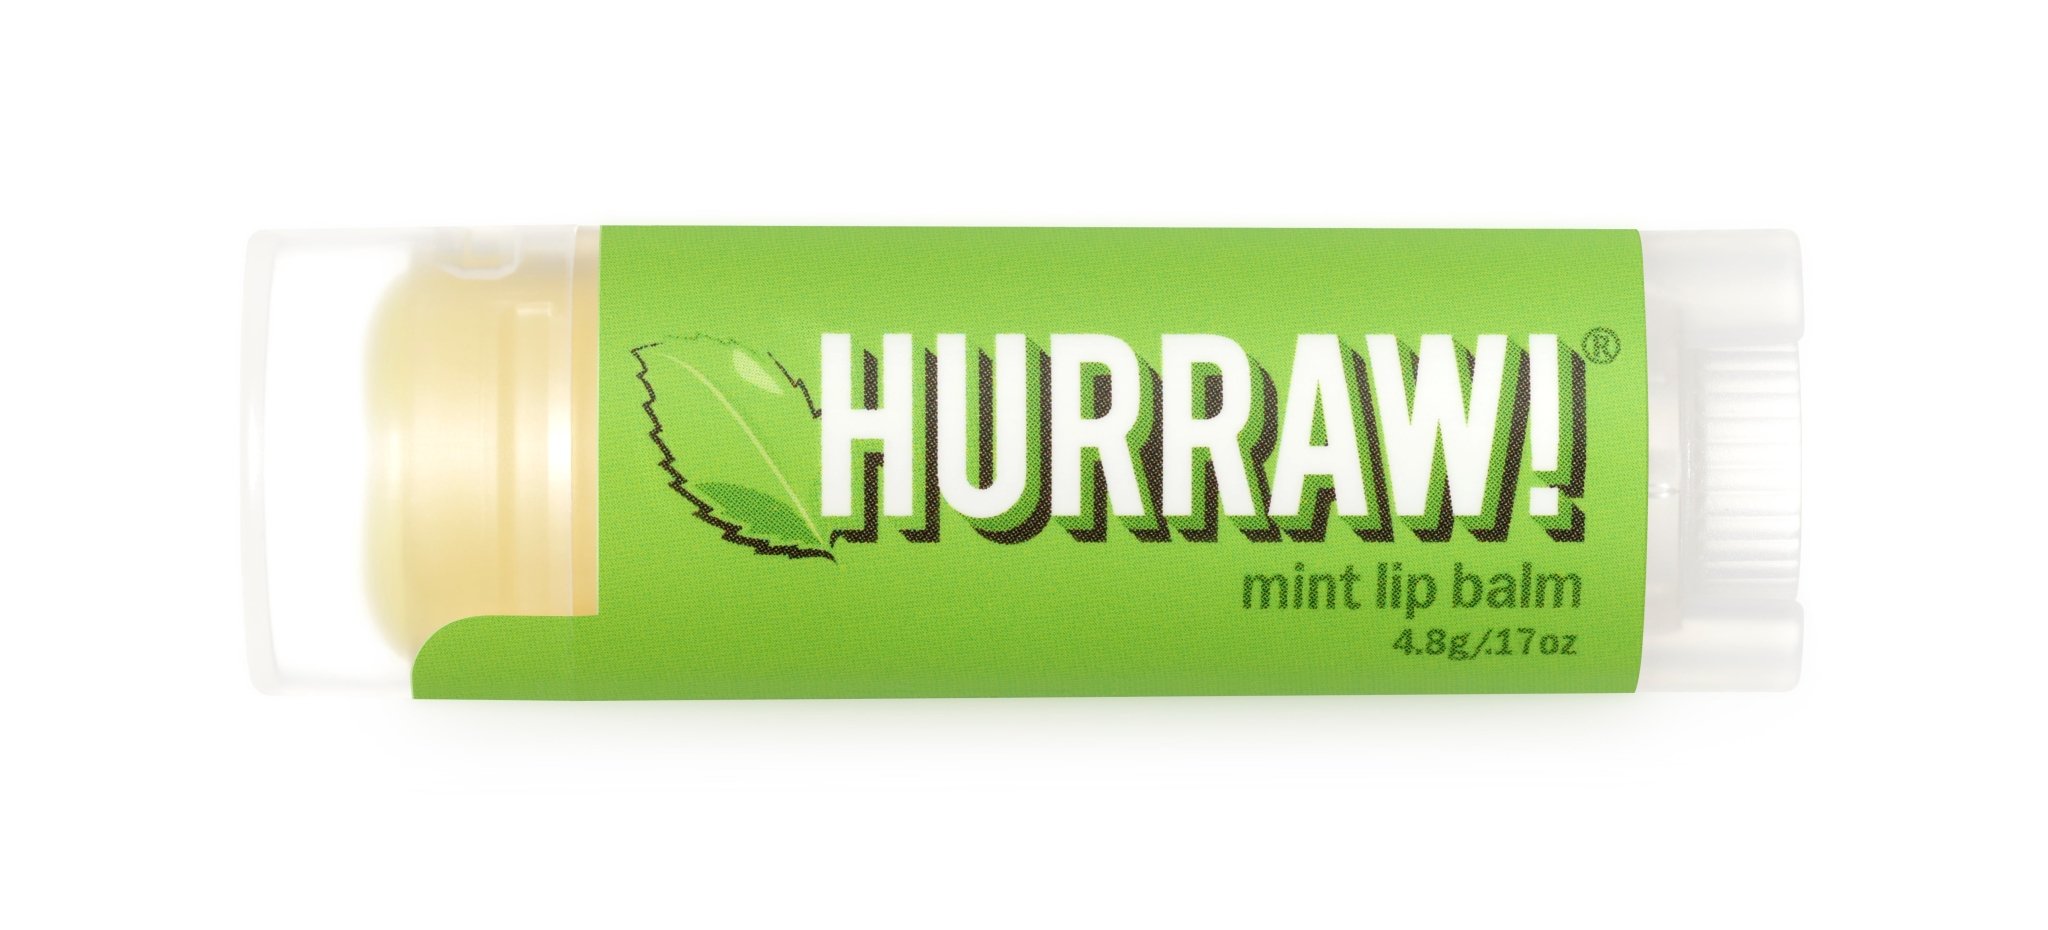 Mint Lip Balm - Guanako.Beauty